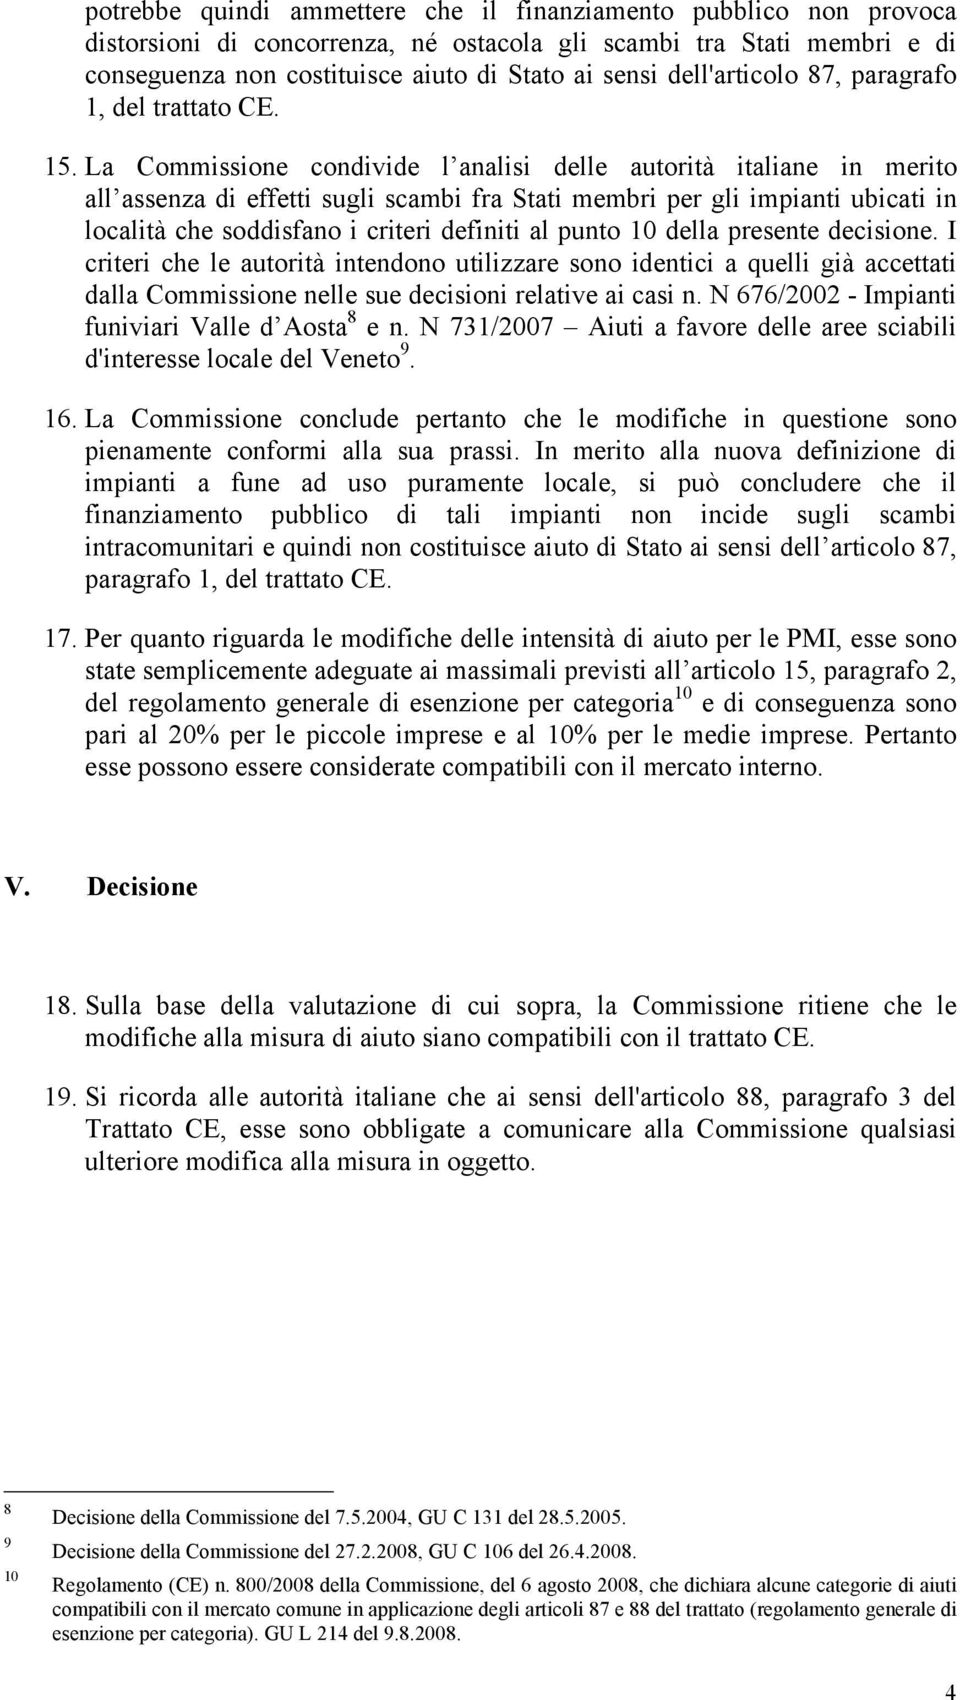 La Commissione condivide l analisi delle autorità italiane in merito all assenza di effetti sugli scambi fra Stati membri per gli impianti ubicati in località che soddisfano i criteri definiti al